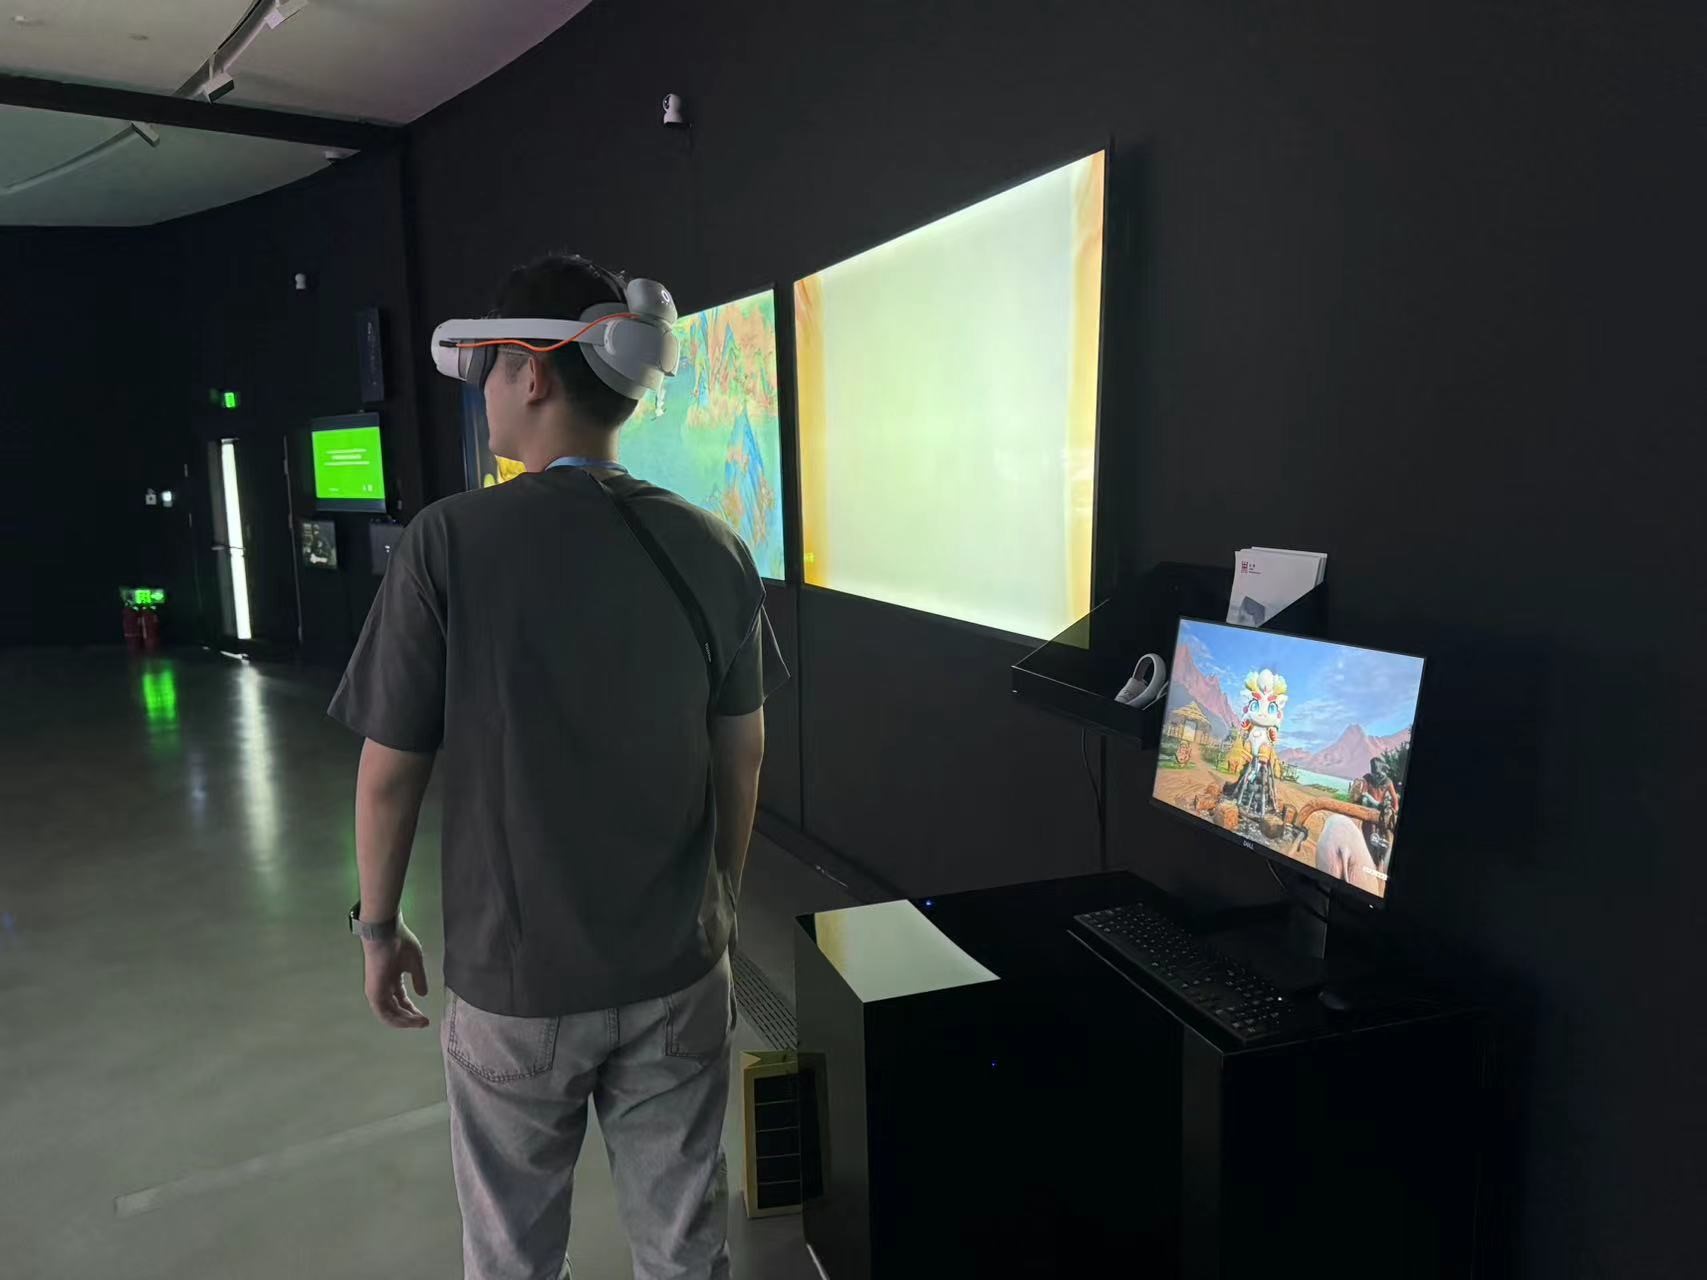 大展现场观众佩戴VR眼镜体验VR 沉浸式探索展